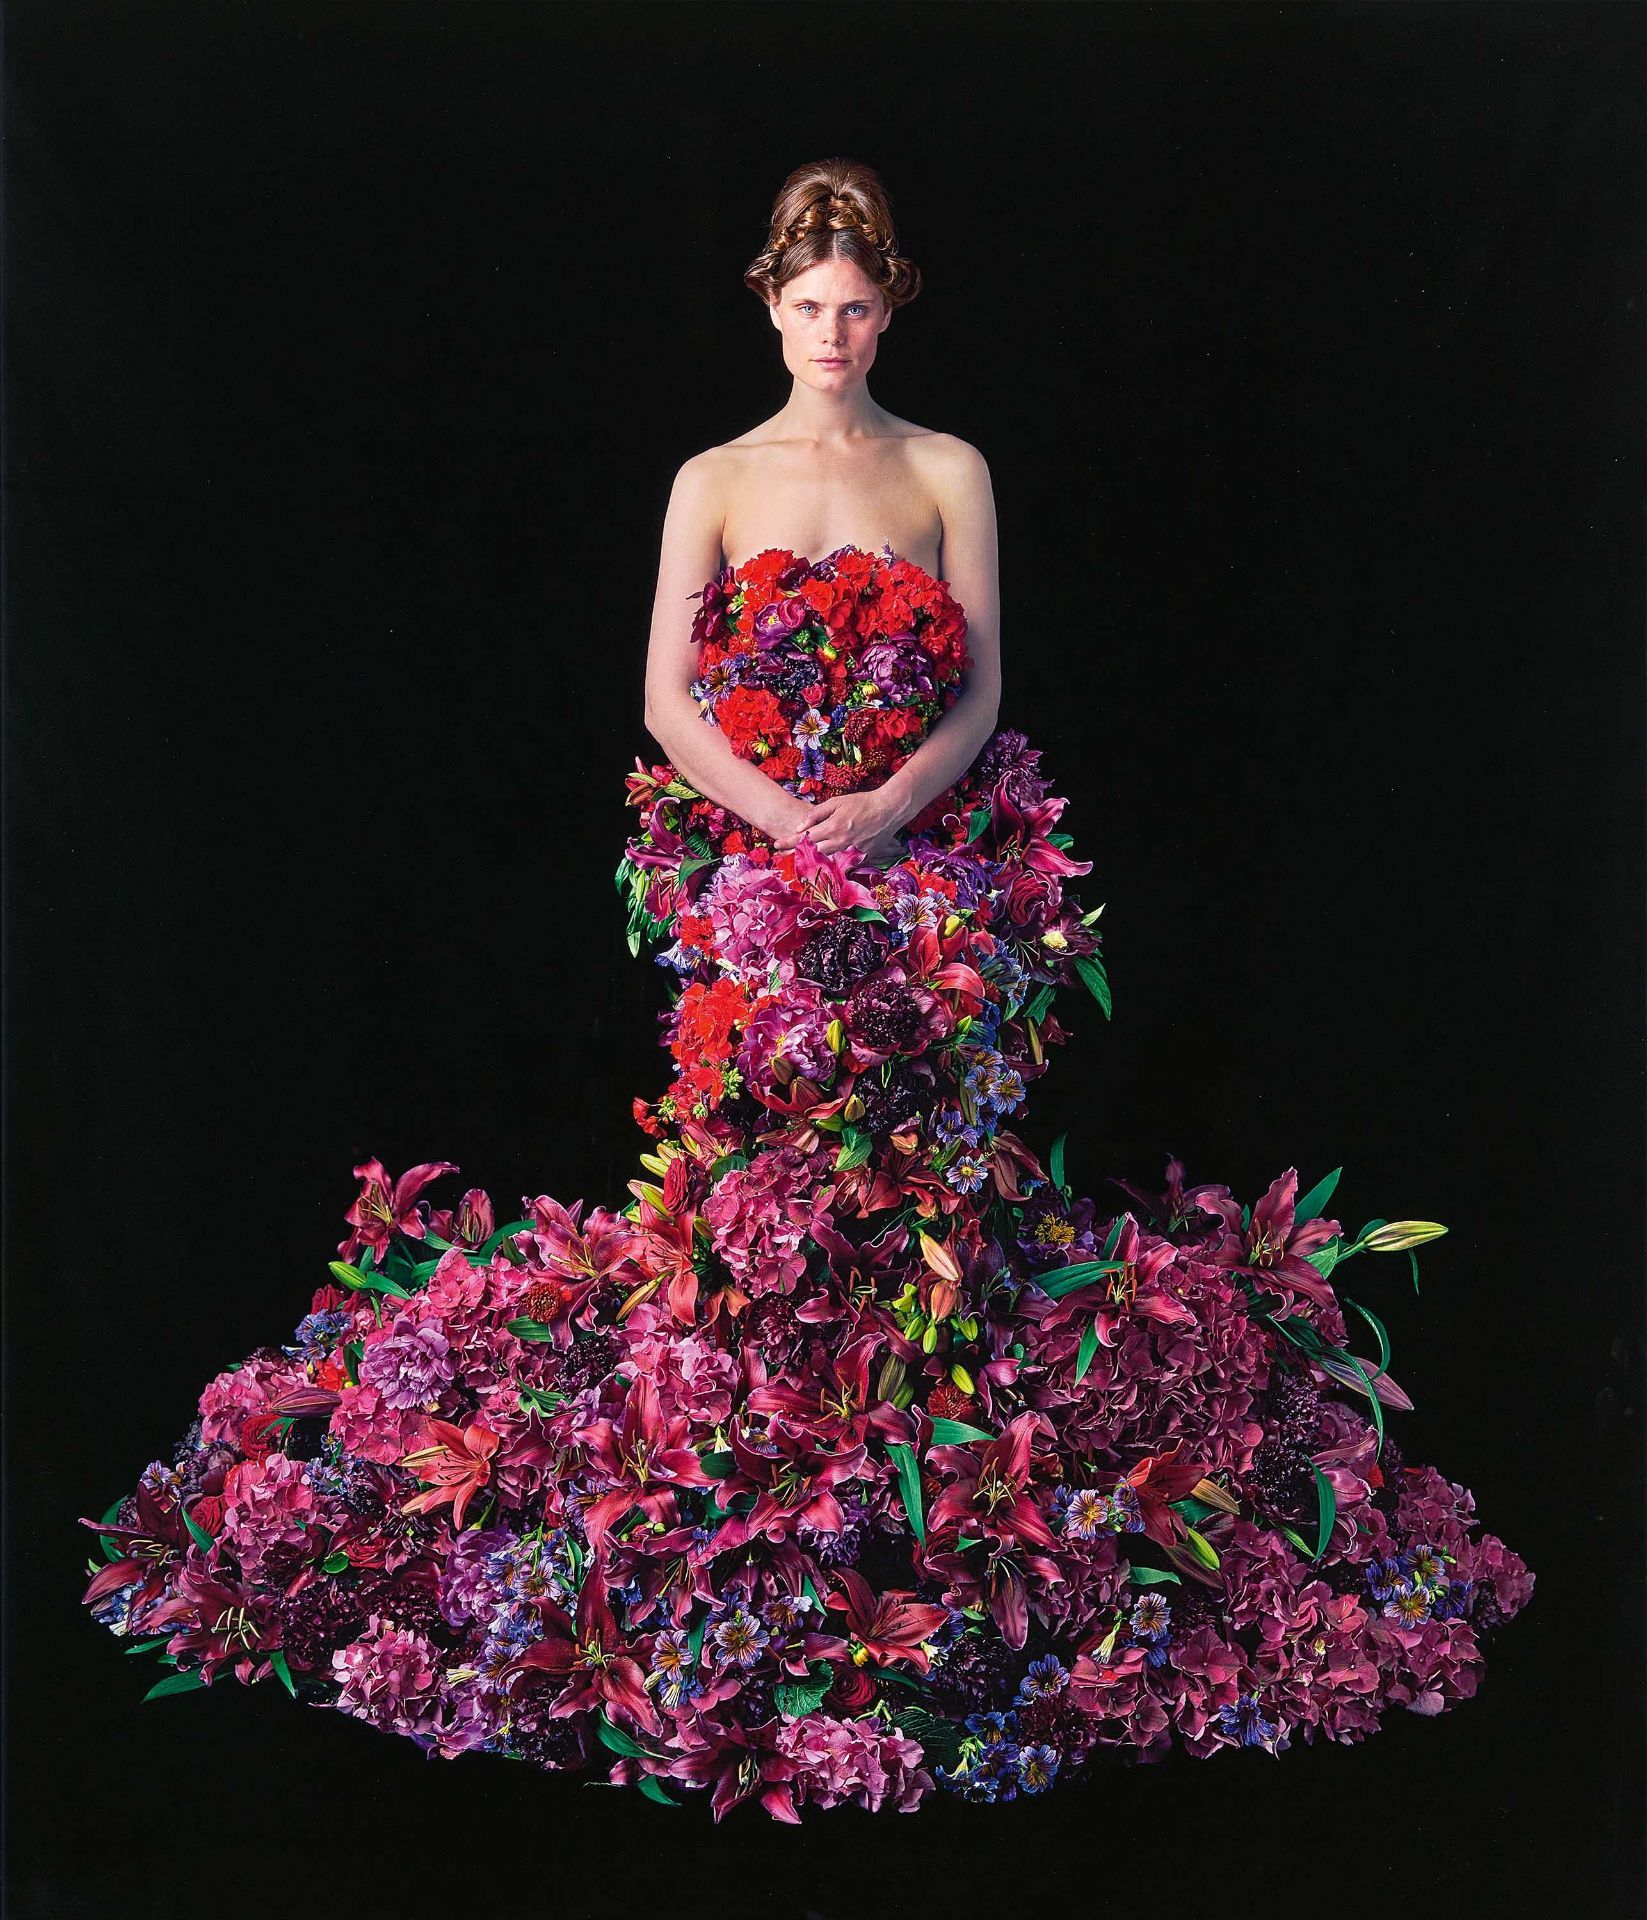 Nathalie Edenmont: Flowering